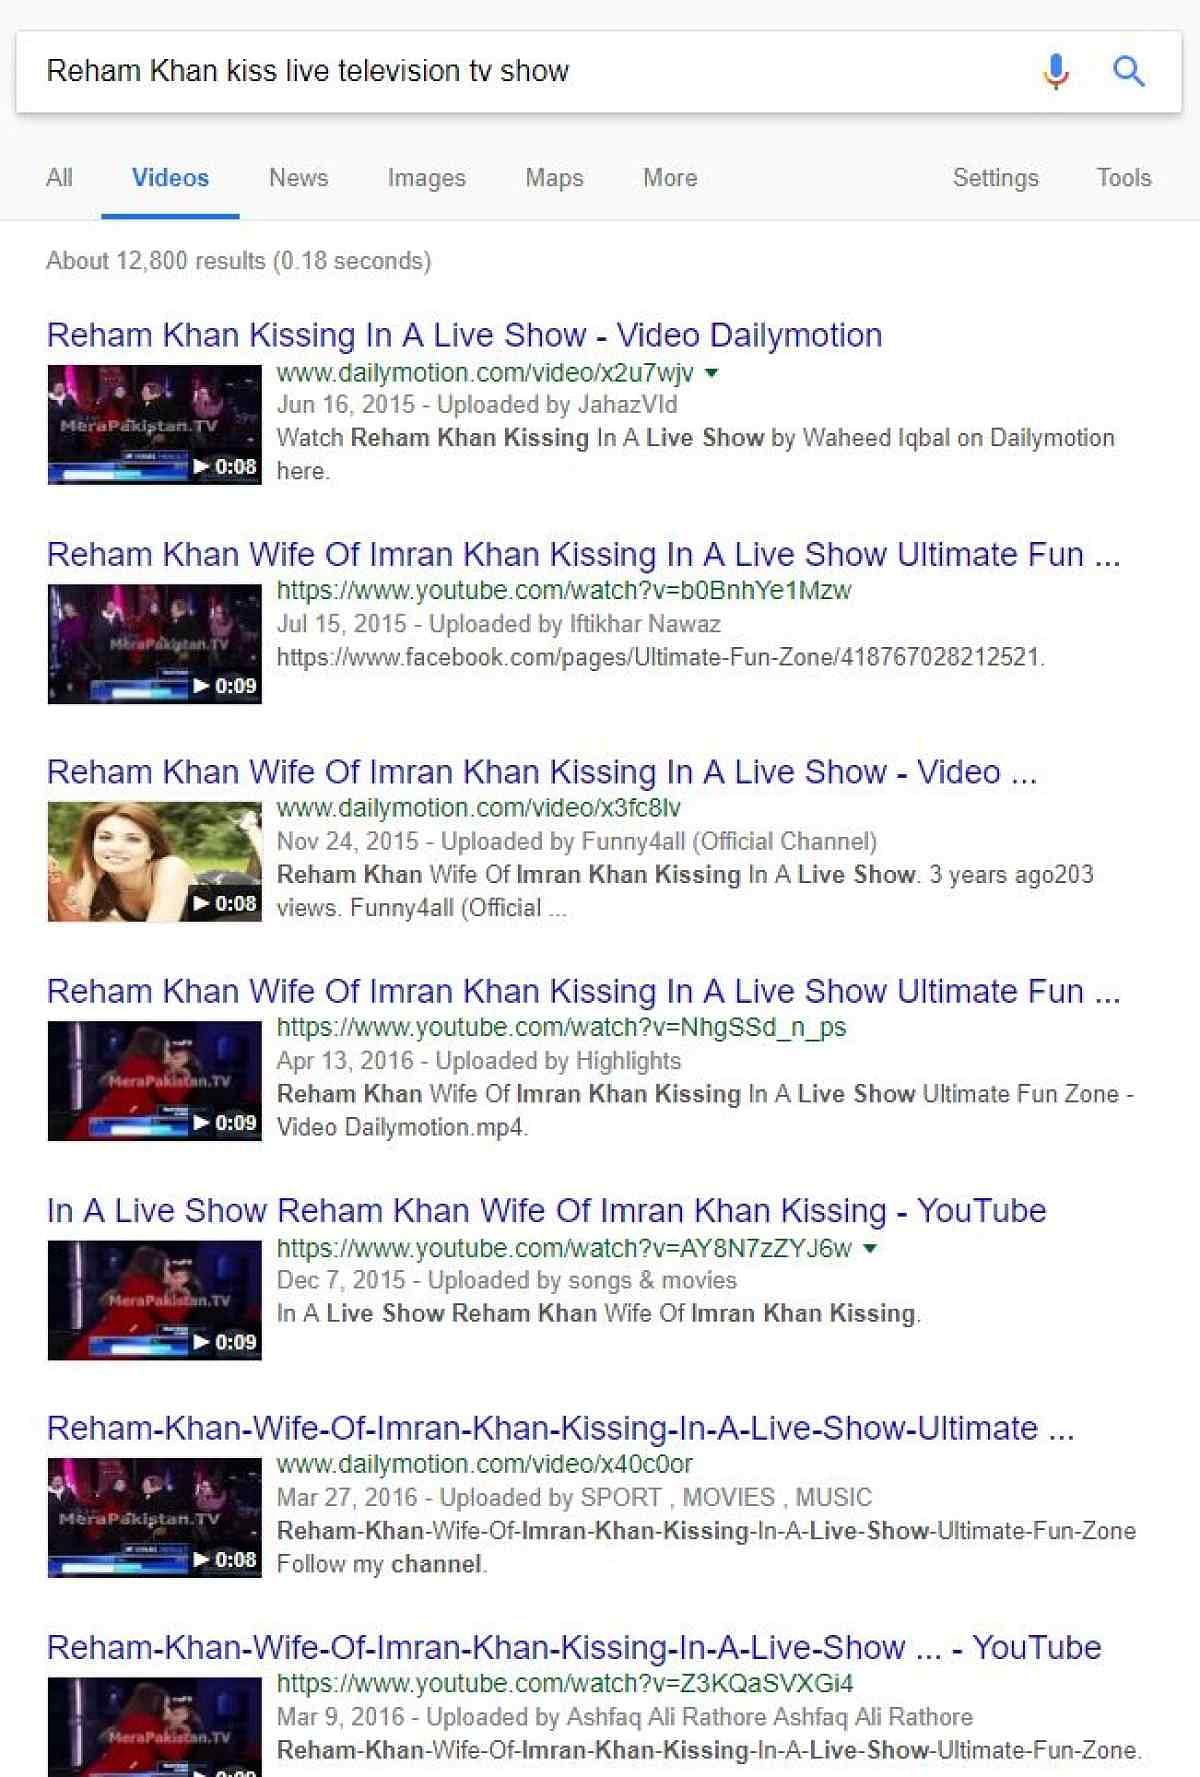 वीडियो में दावा किया जा रहा है कि रेहम खान ने एक अमेरिकी टीवी शो के दौरान एक शख्स को किस कर लिया.